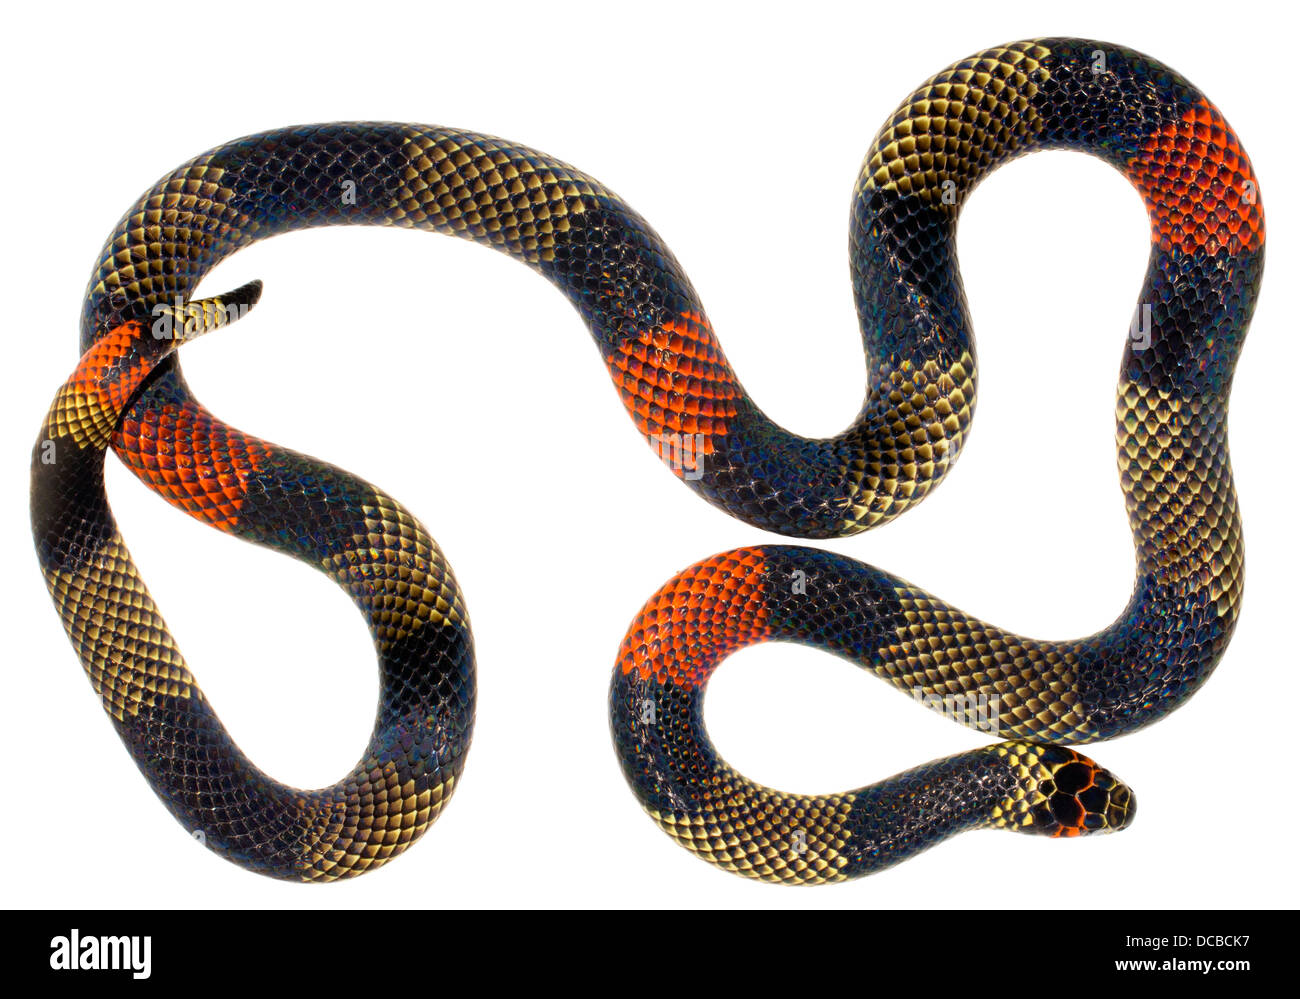 Amazónica (Serpiente coral Micrurus spixii obscurus). Una serpiente venenosa de la Amazonía Ecuatoriana. Foto de stock